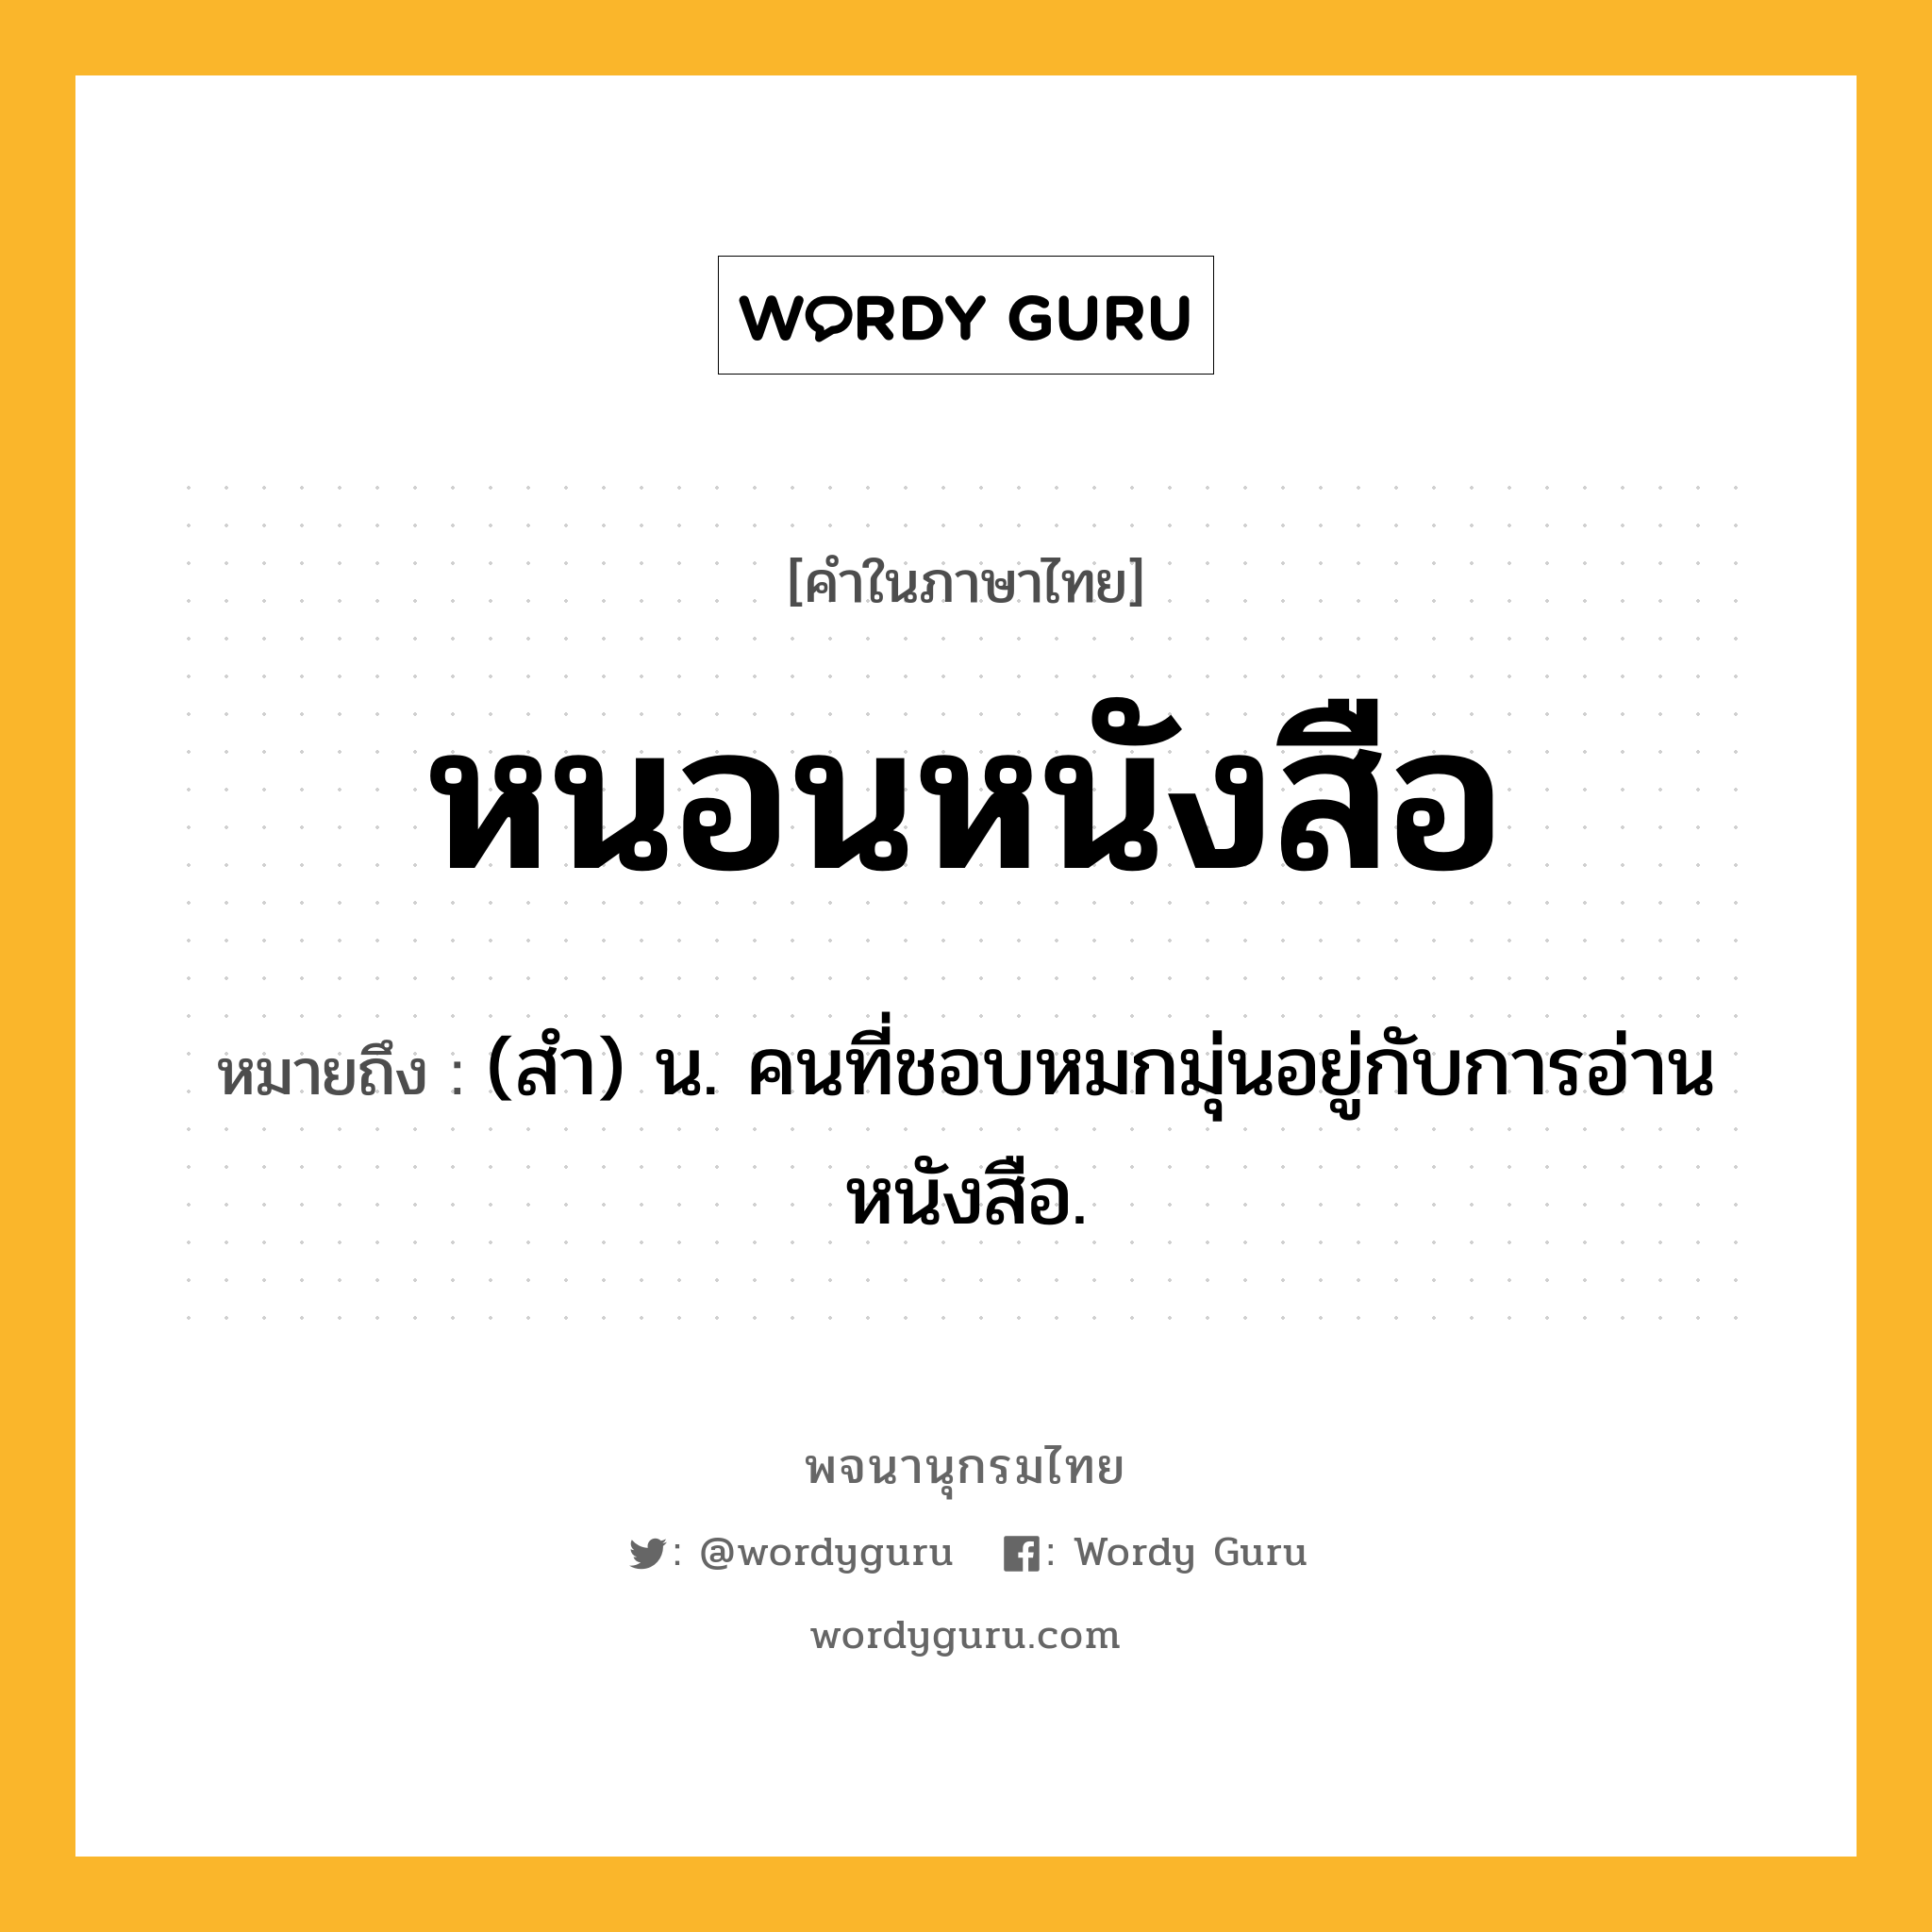 หนอนหนังสือ หมายถึงอะไร?, คำในภาษาไทย หนอนหนังสือ หมายถึง (สํา) น. คนที่ชอบหมกมุ่นอยู่กับการอ่านหนังสือ.